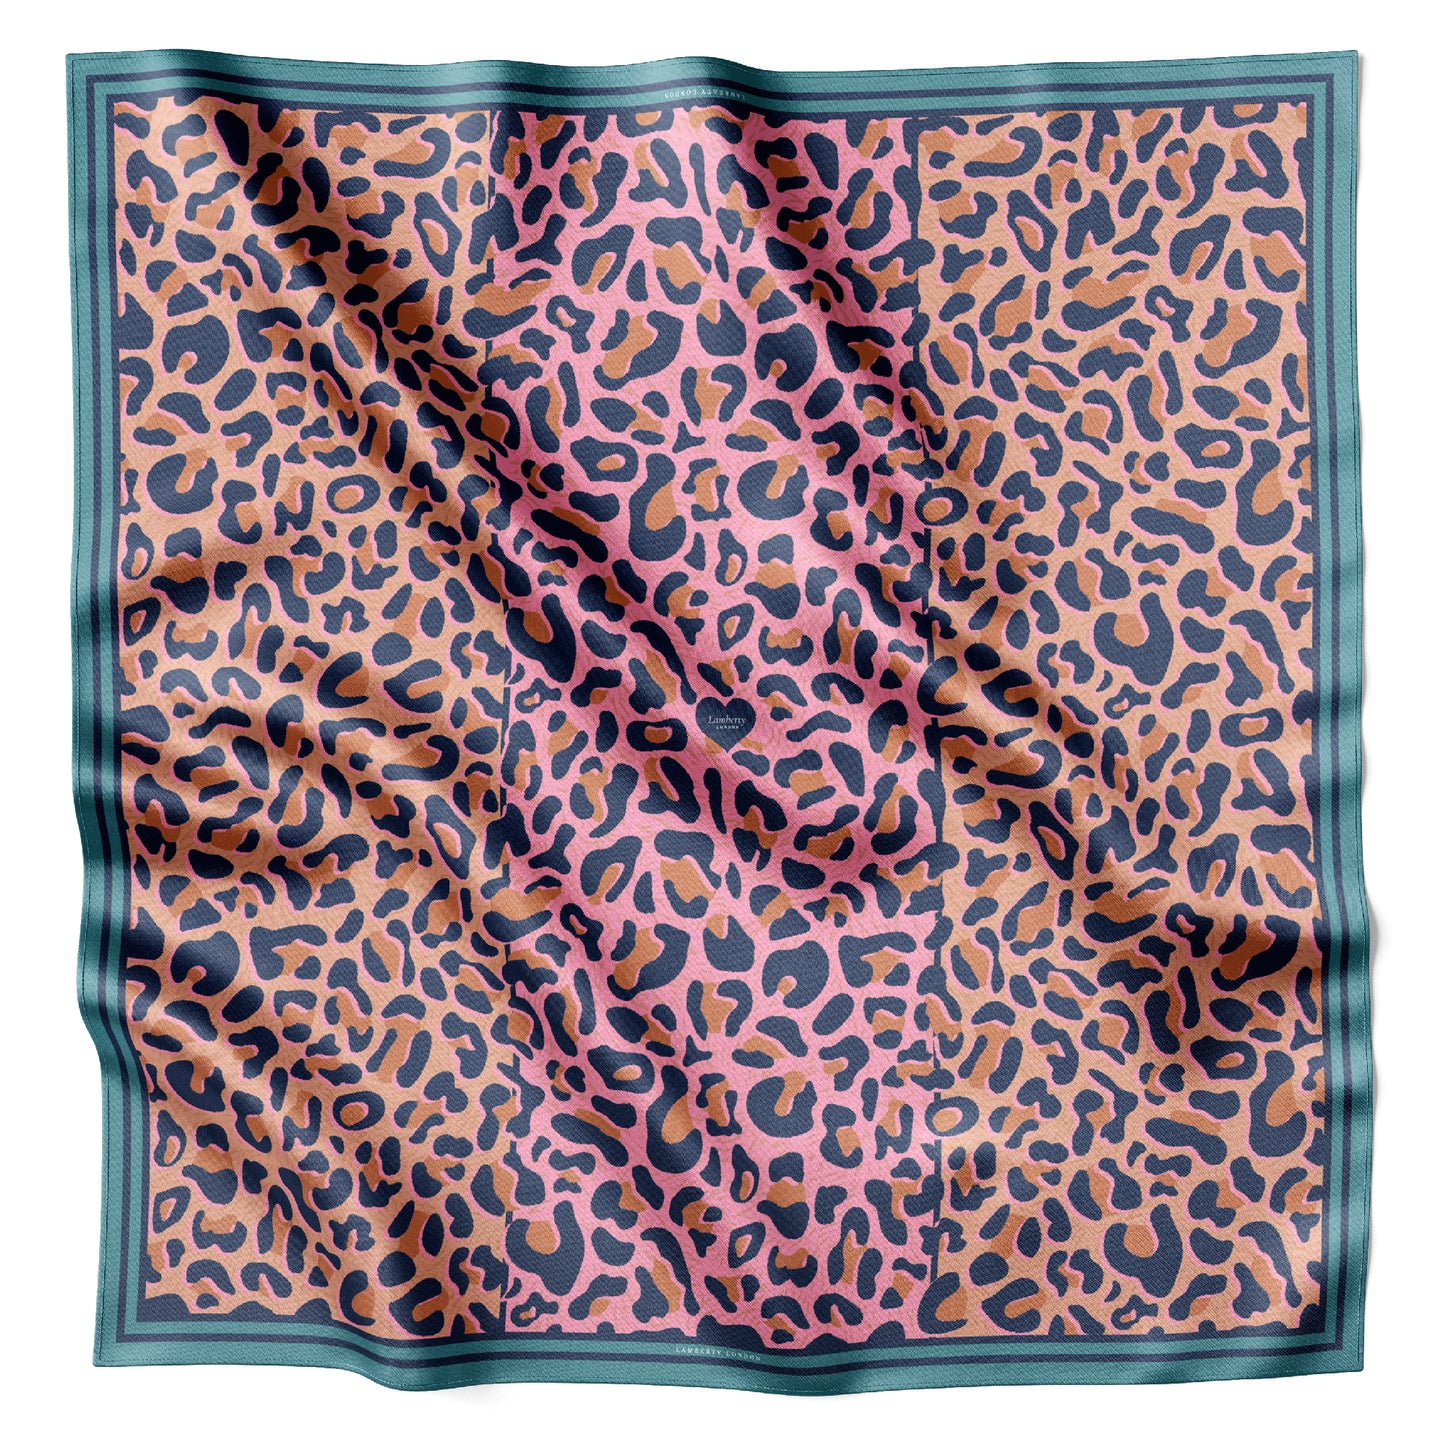 Un leopardo en color